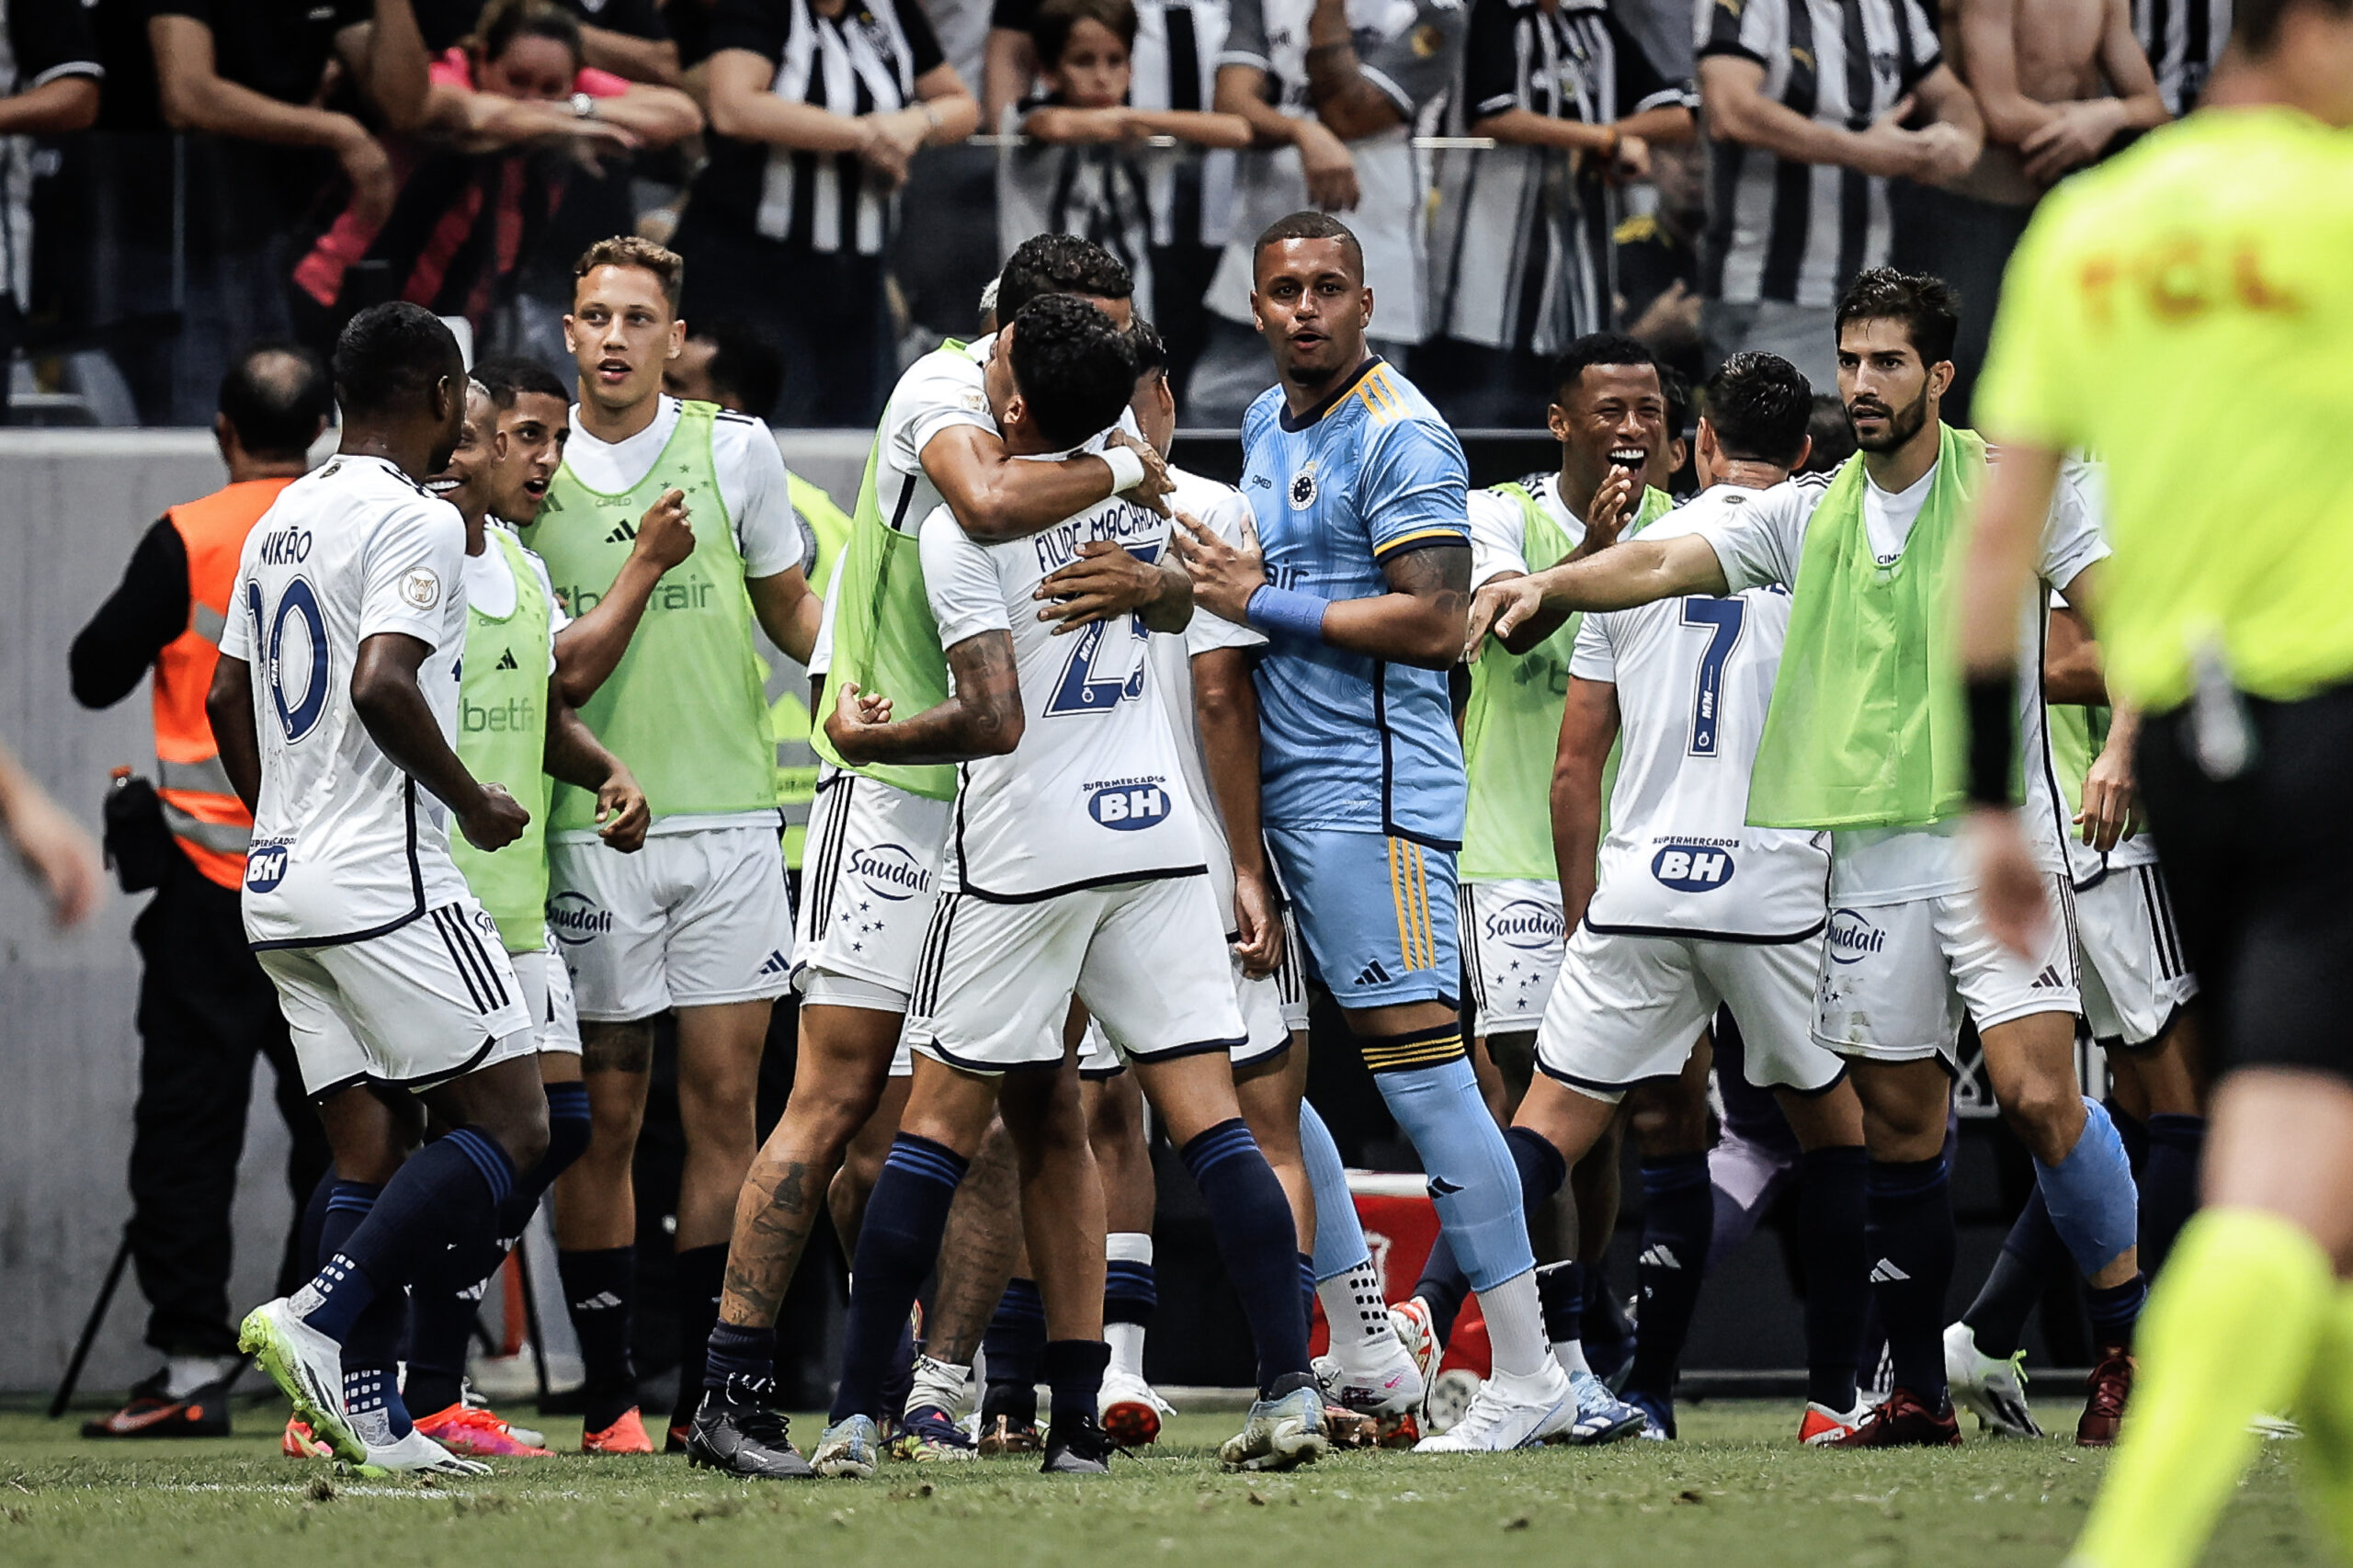 Jogadores comemoram após o gol contra de Jemerson. Foto: Tiago Tindade / Staff Imagens